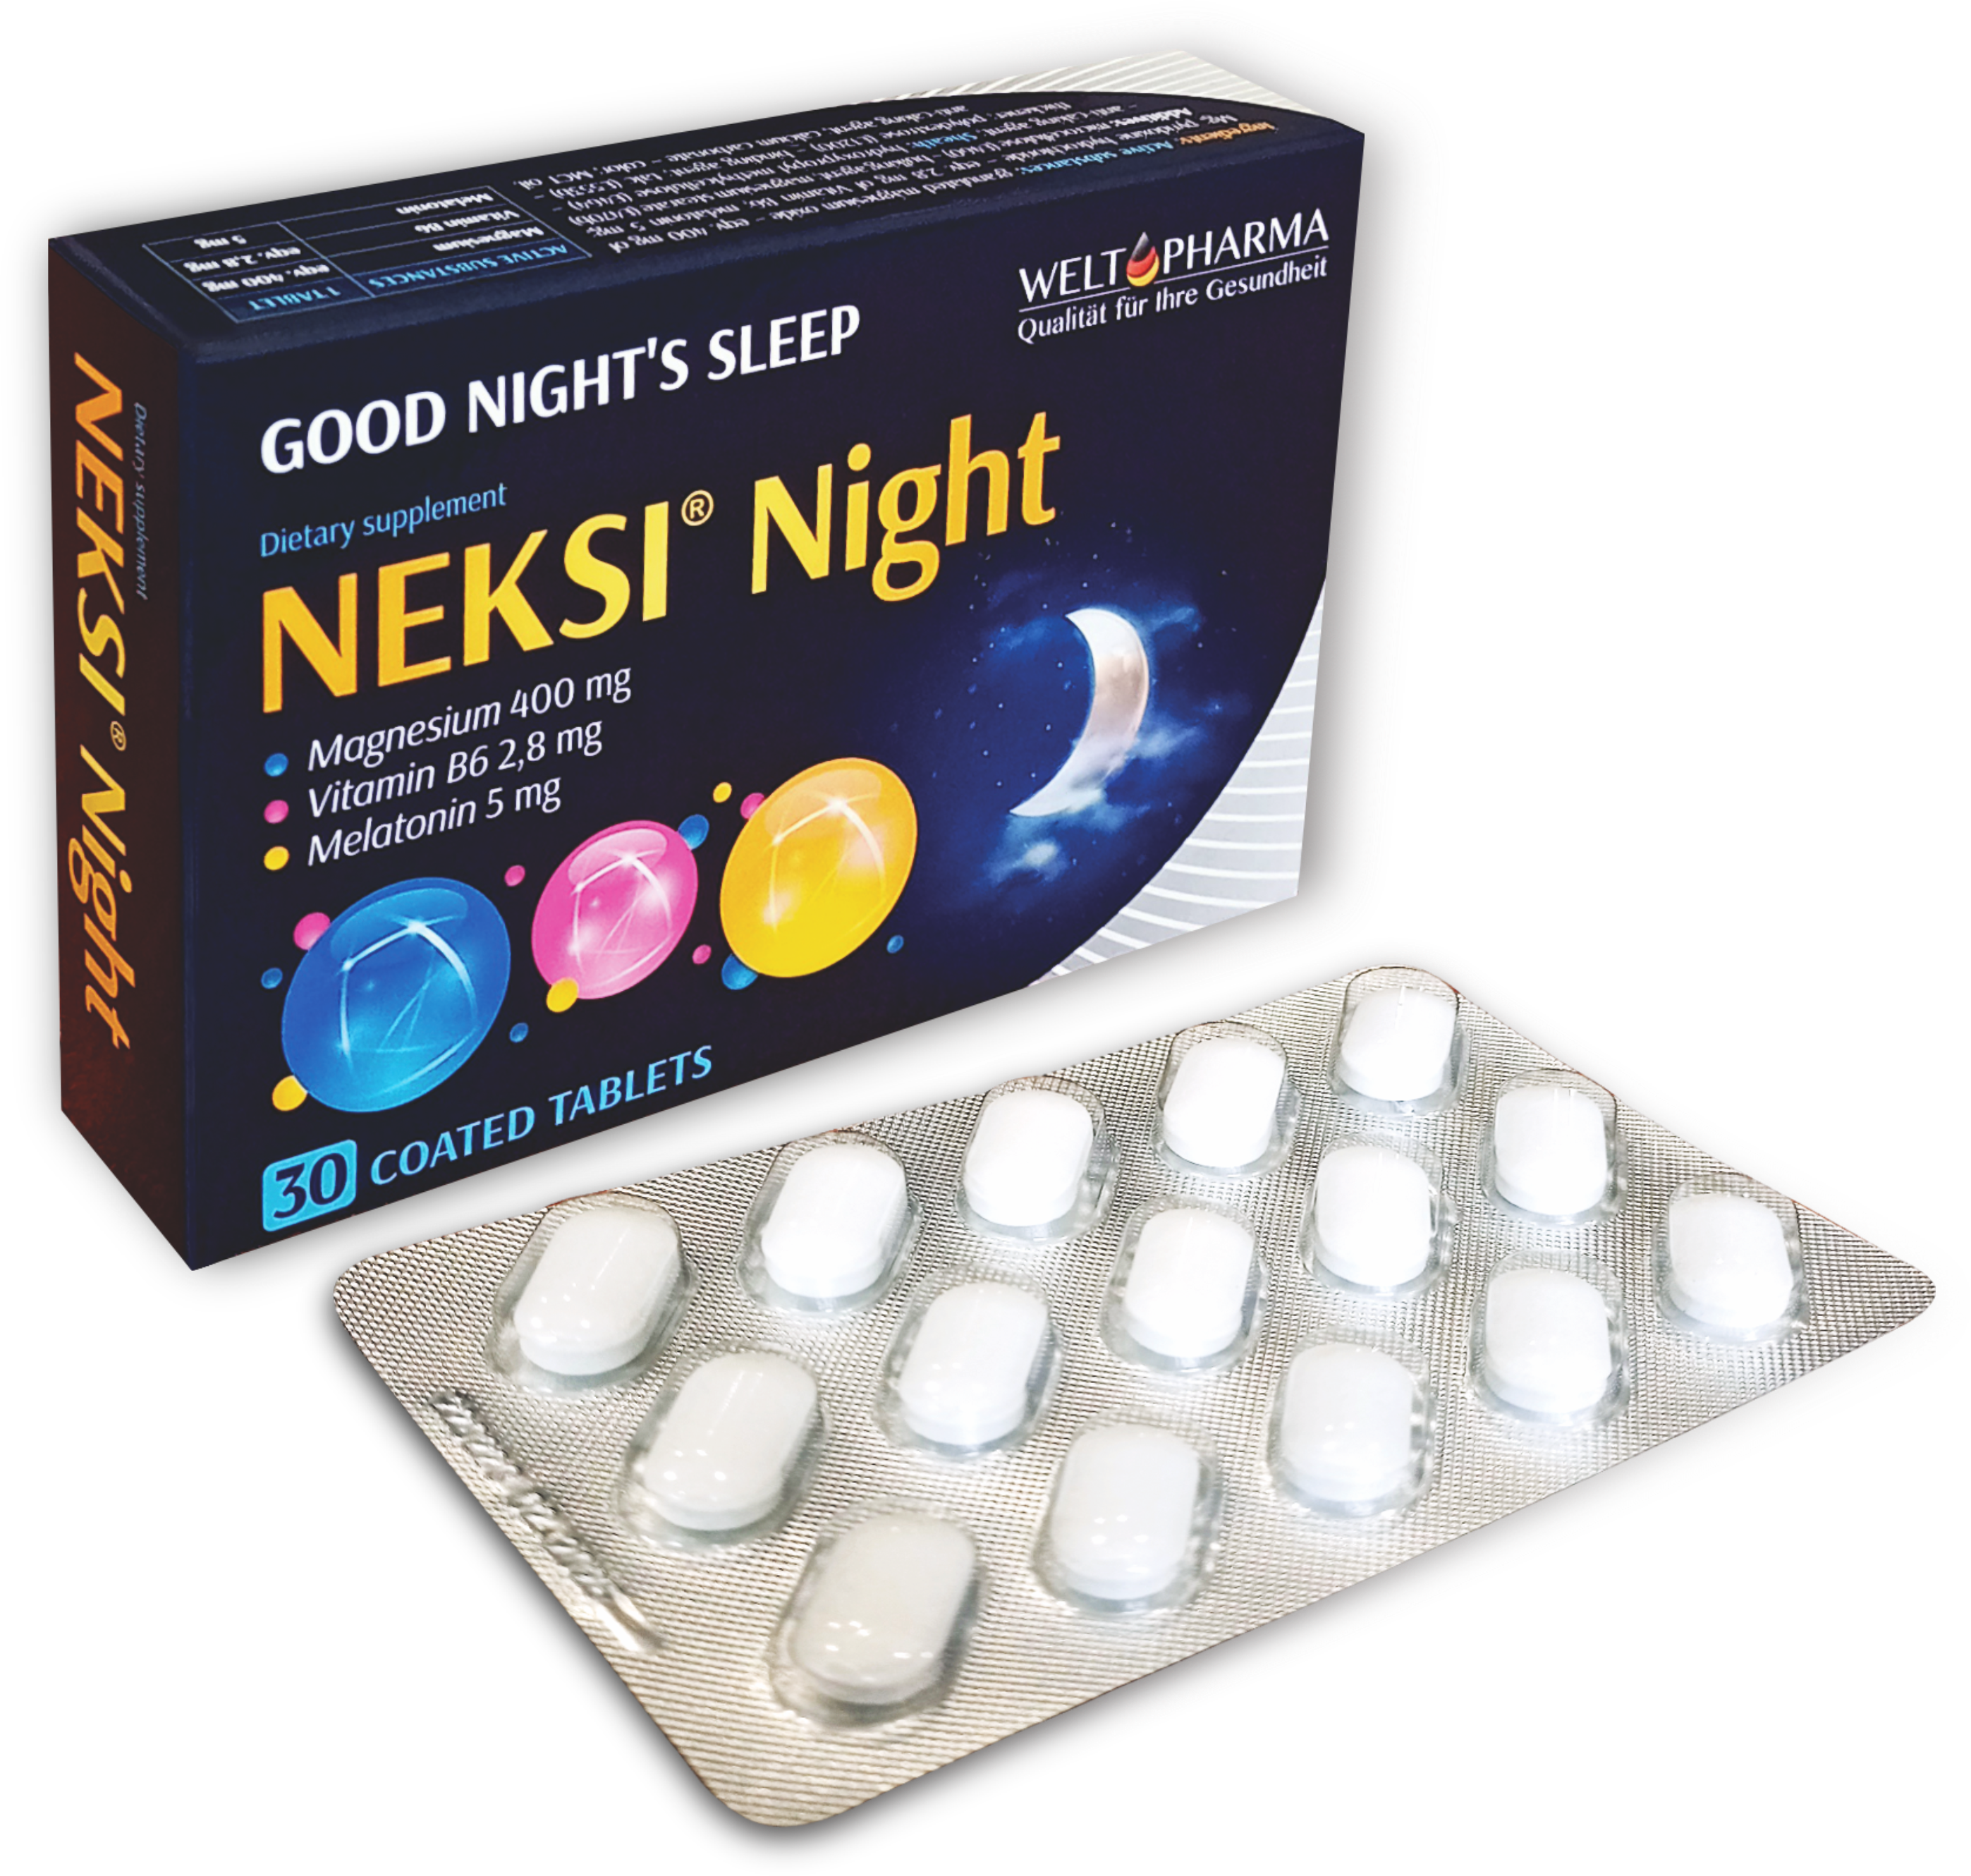 ნექსი ნაითი / Neksi Night